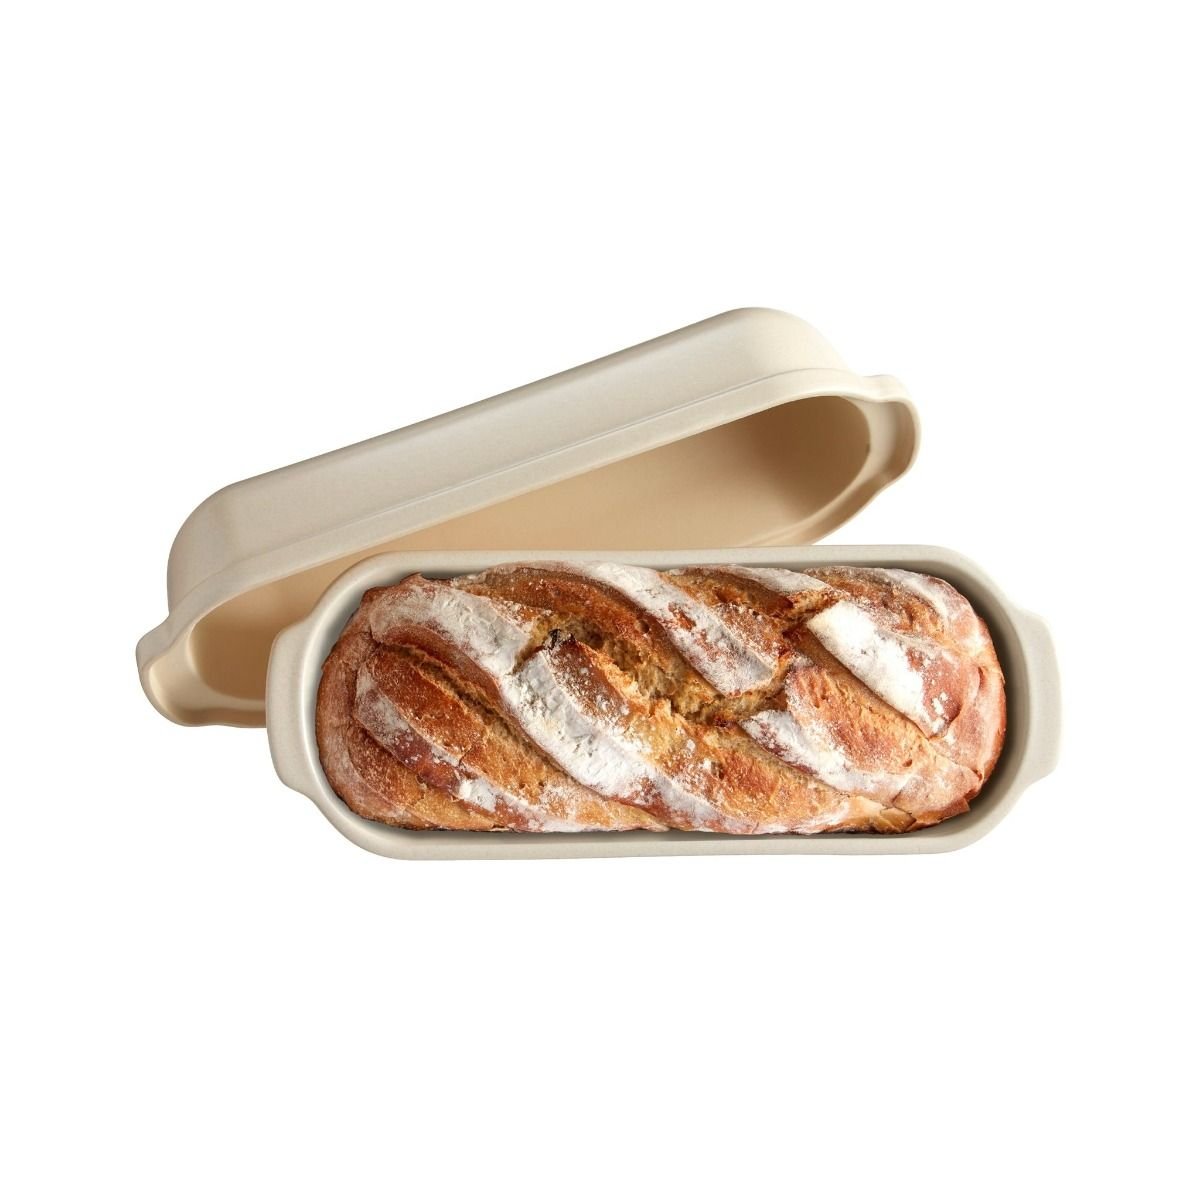 Emile Henry Bread Loaf Baker Charcoal